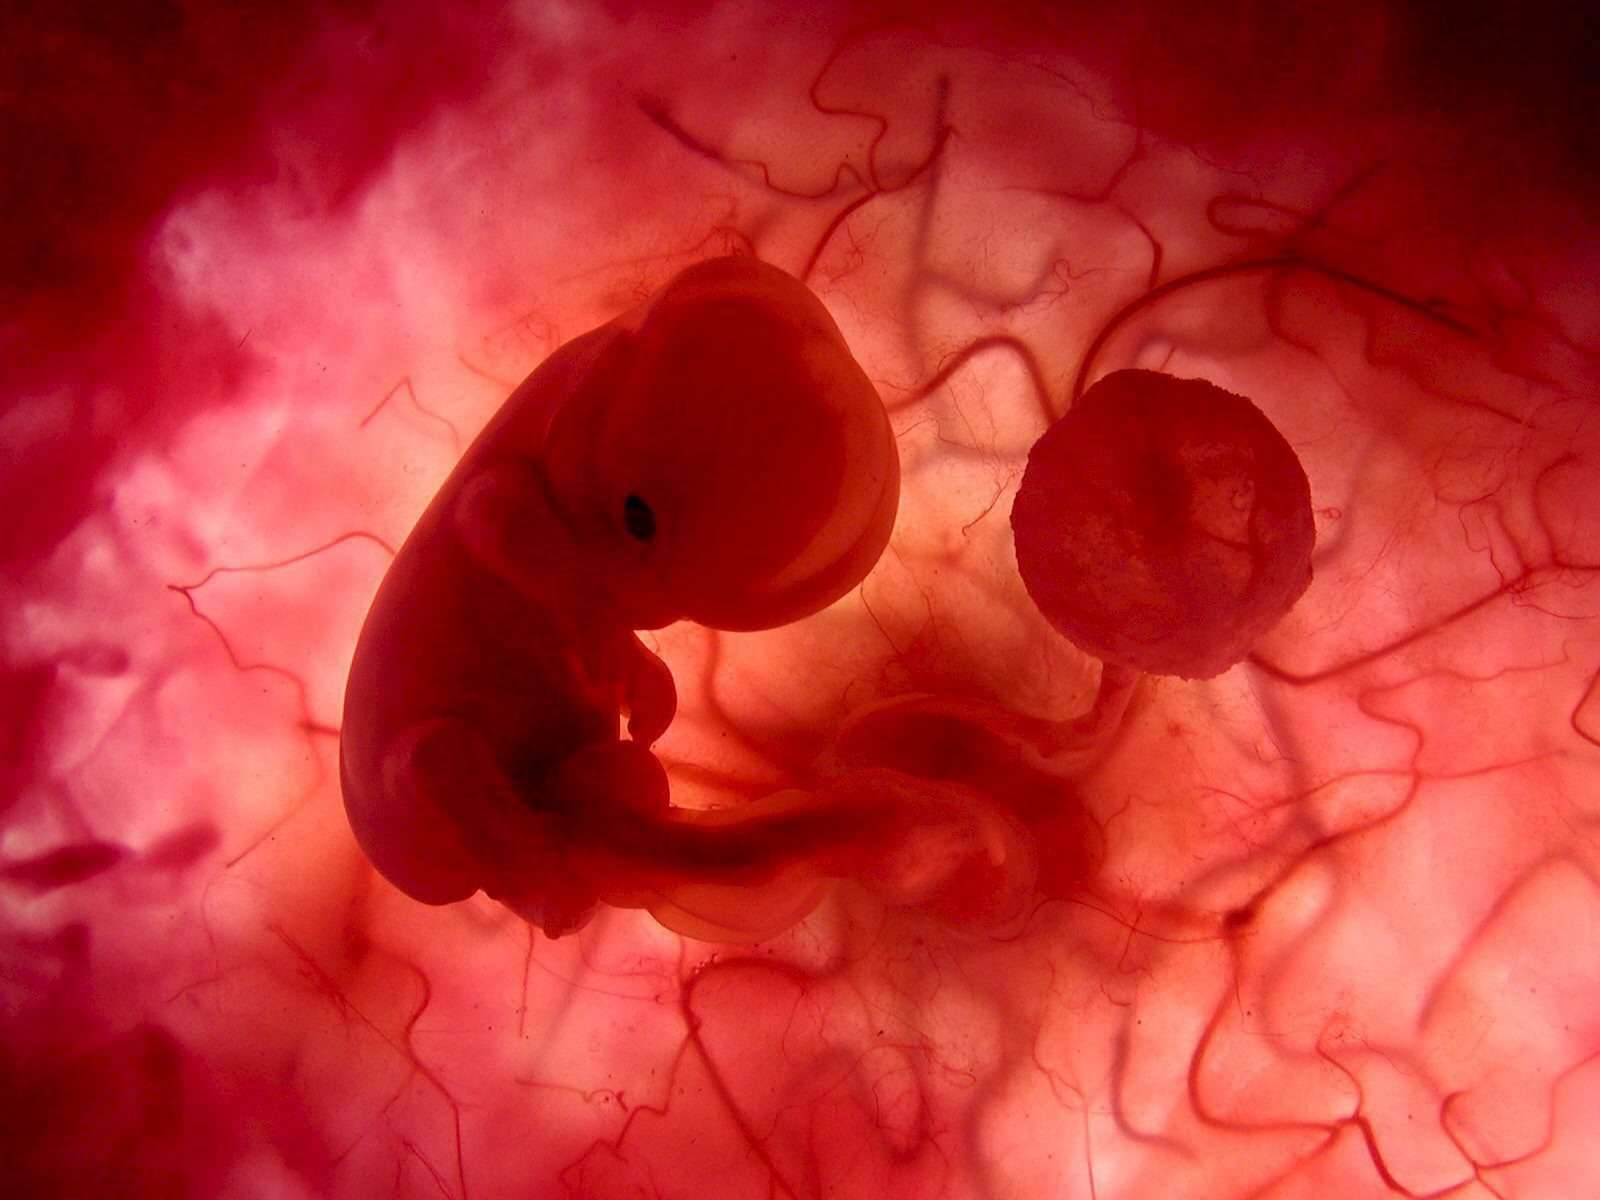 Entwicklung des Fötus - Der Embryo im Mutterleib mit Nabelschnur und Plazenta